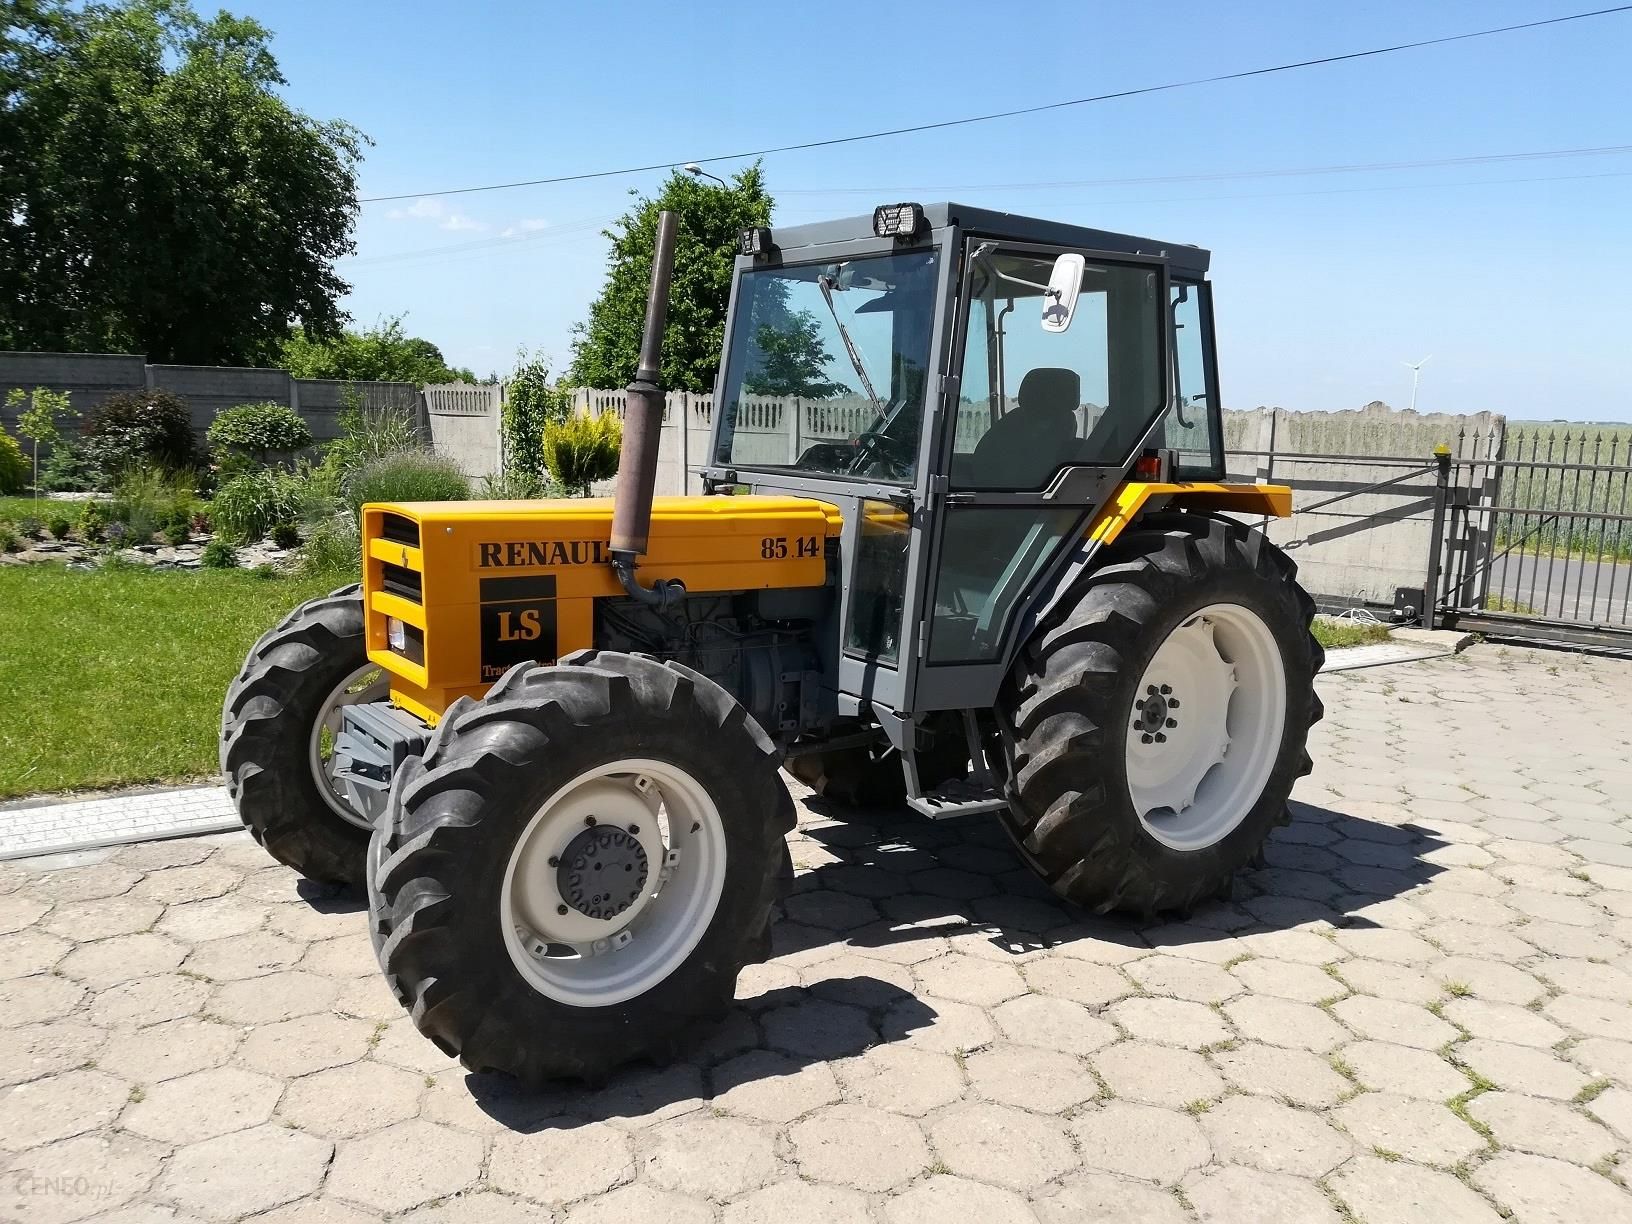 Traktor Ciągnik Renault 8514 Ls - Opinie I Ceny Na Ceneo.pl